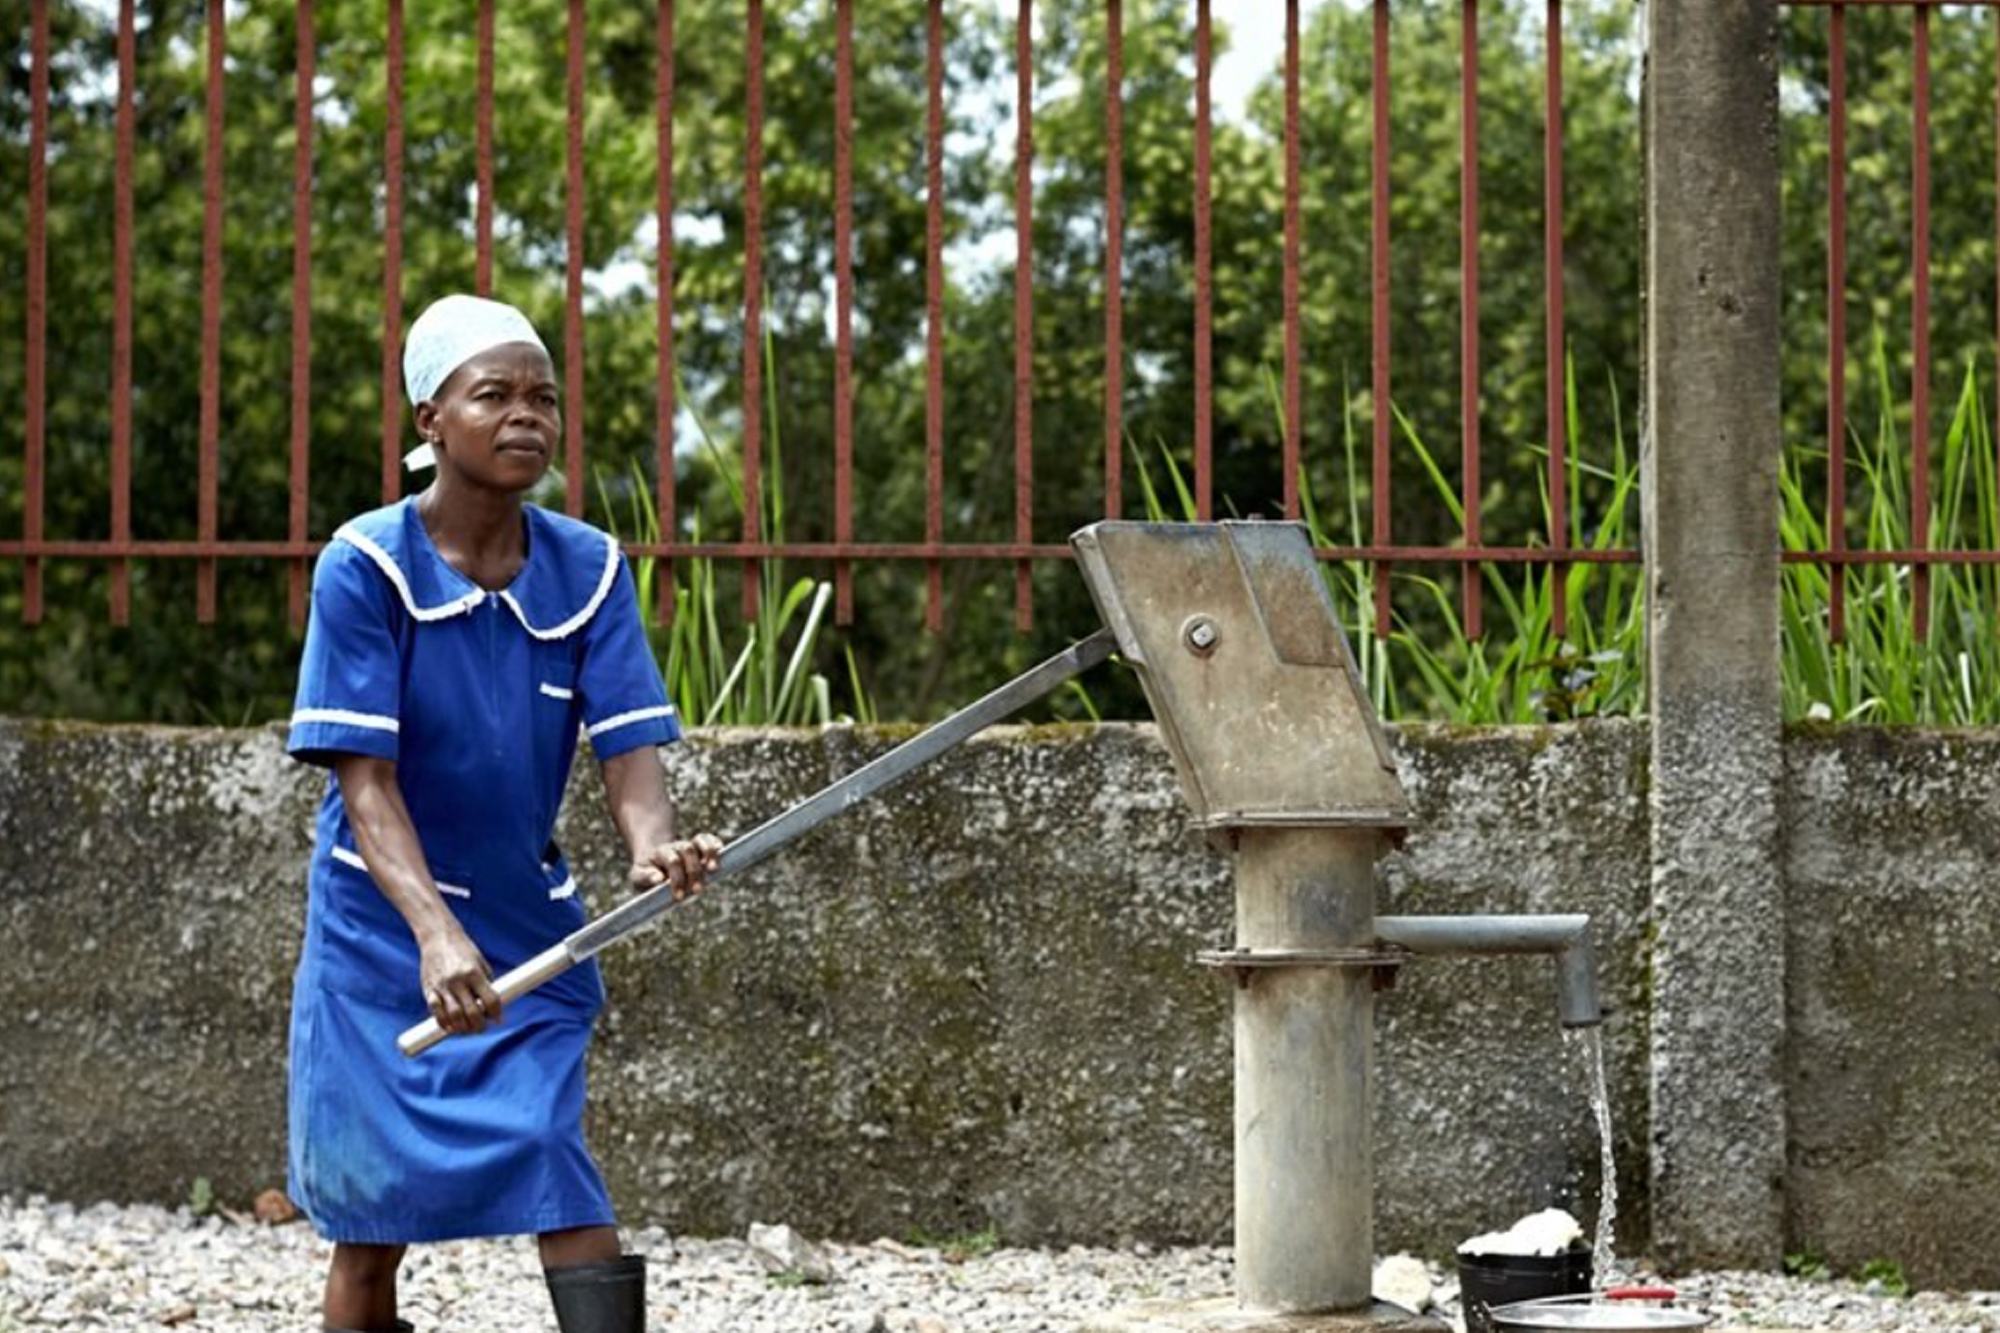 من الضروري اتخاذ إجراءات عاجلة لضمان إتاحة مياه الشرب المأمونة وخدمات الصرف الصحي والنظافة الصحية للجميع